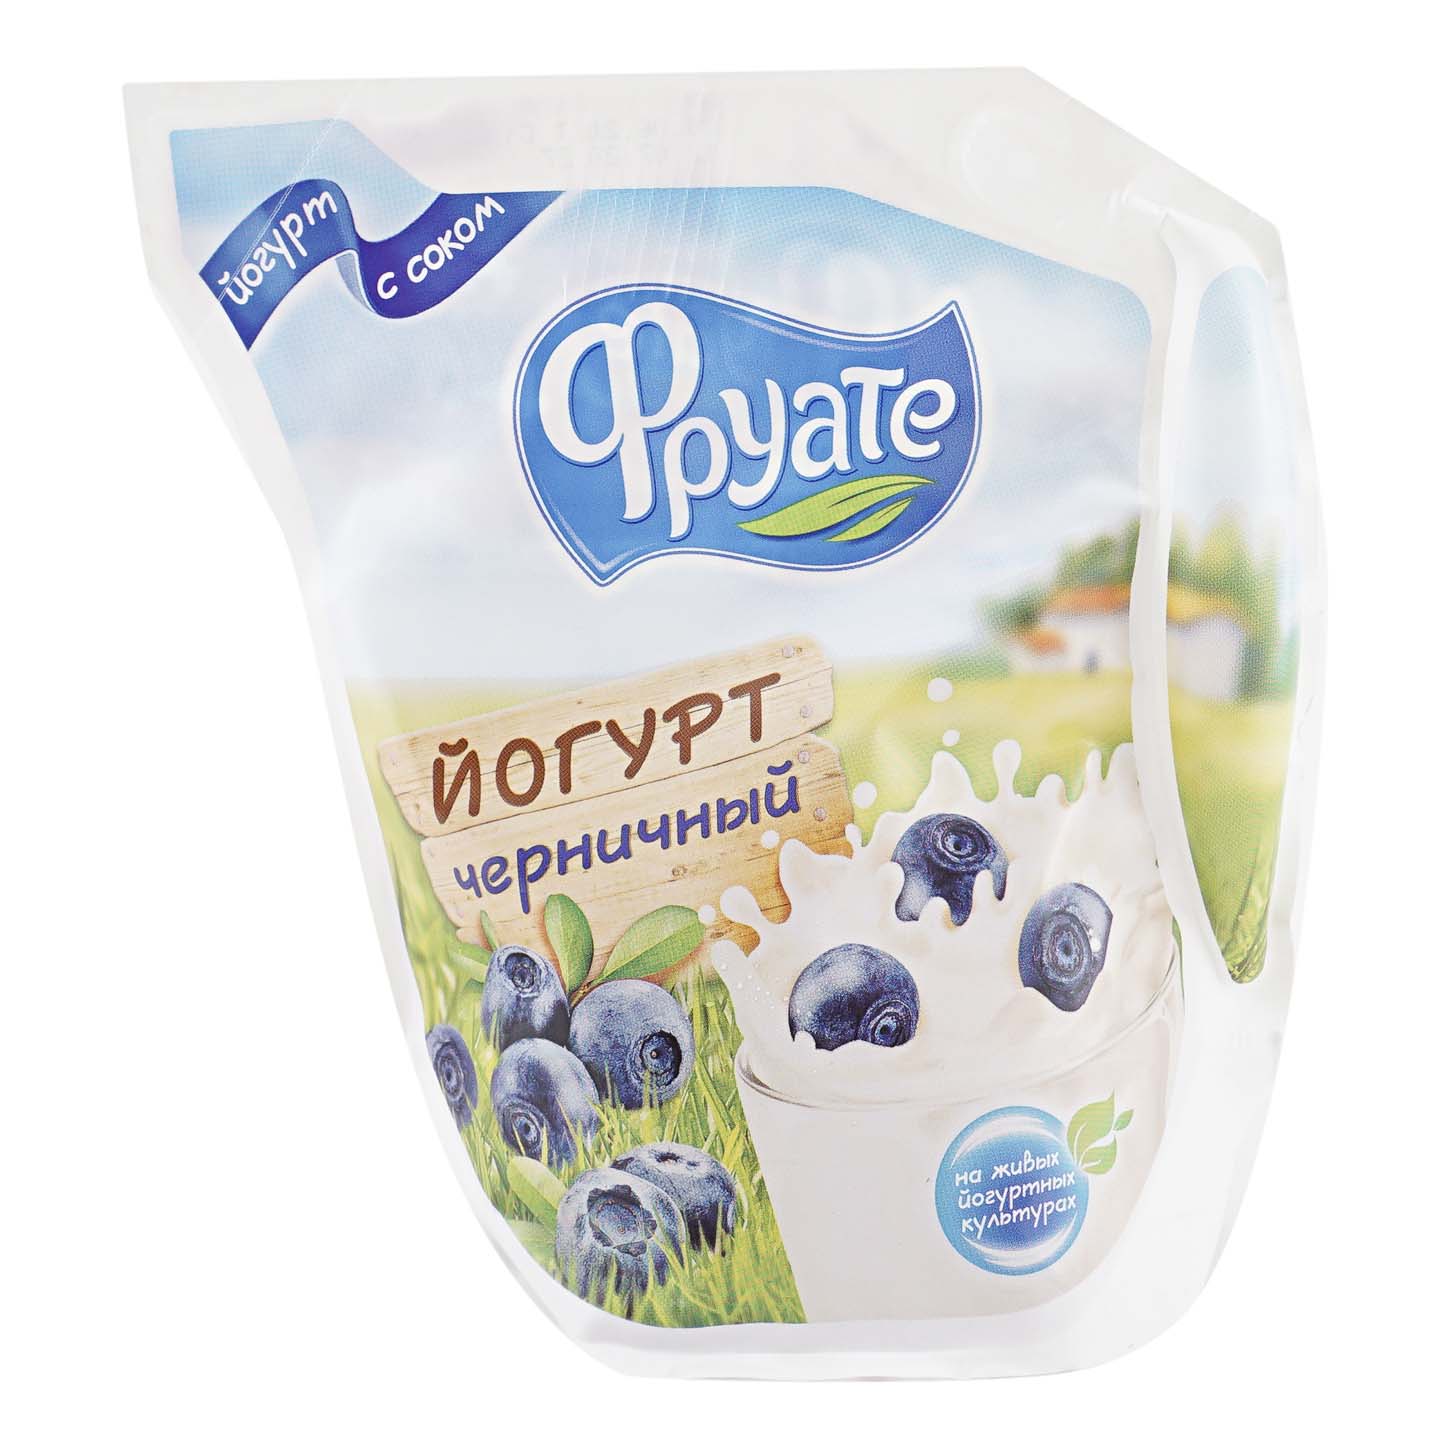 Питьевой йогурт Фруате черника 1,5% 450 г бзмж